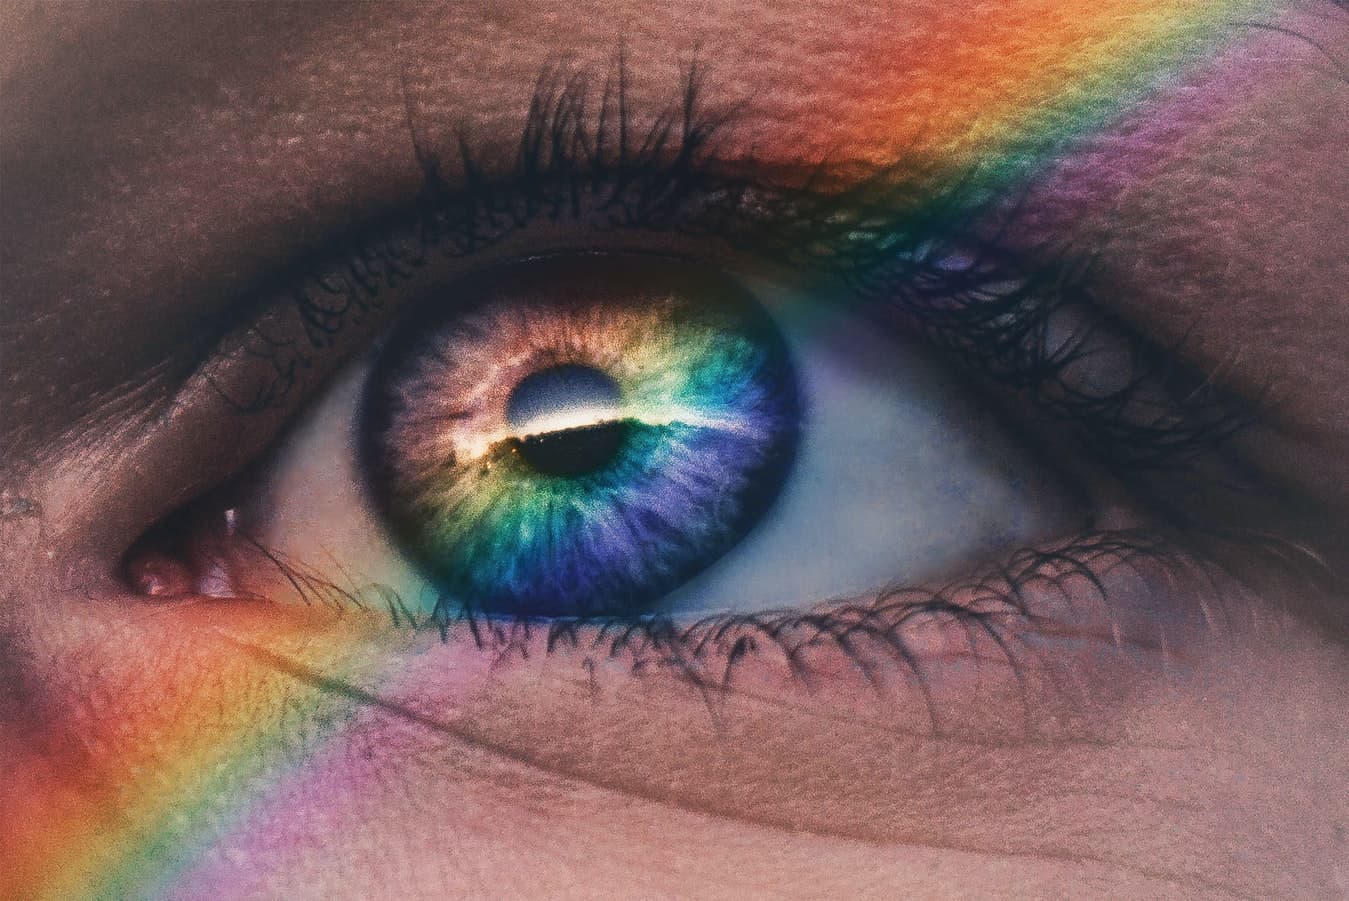 Eye with rainbow over it